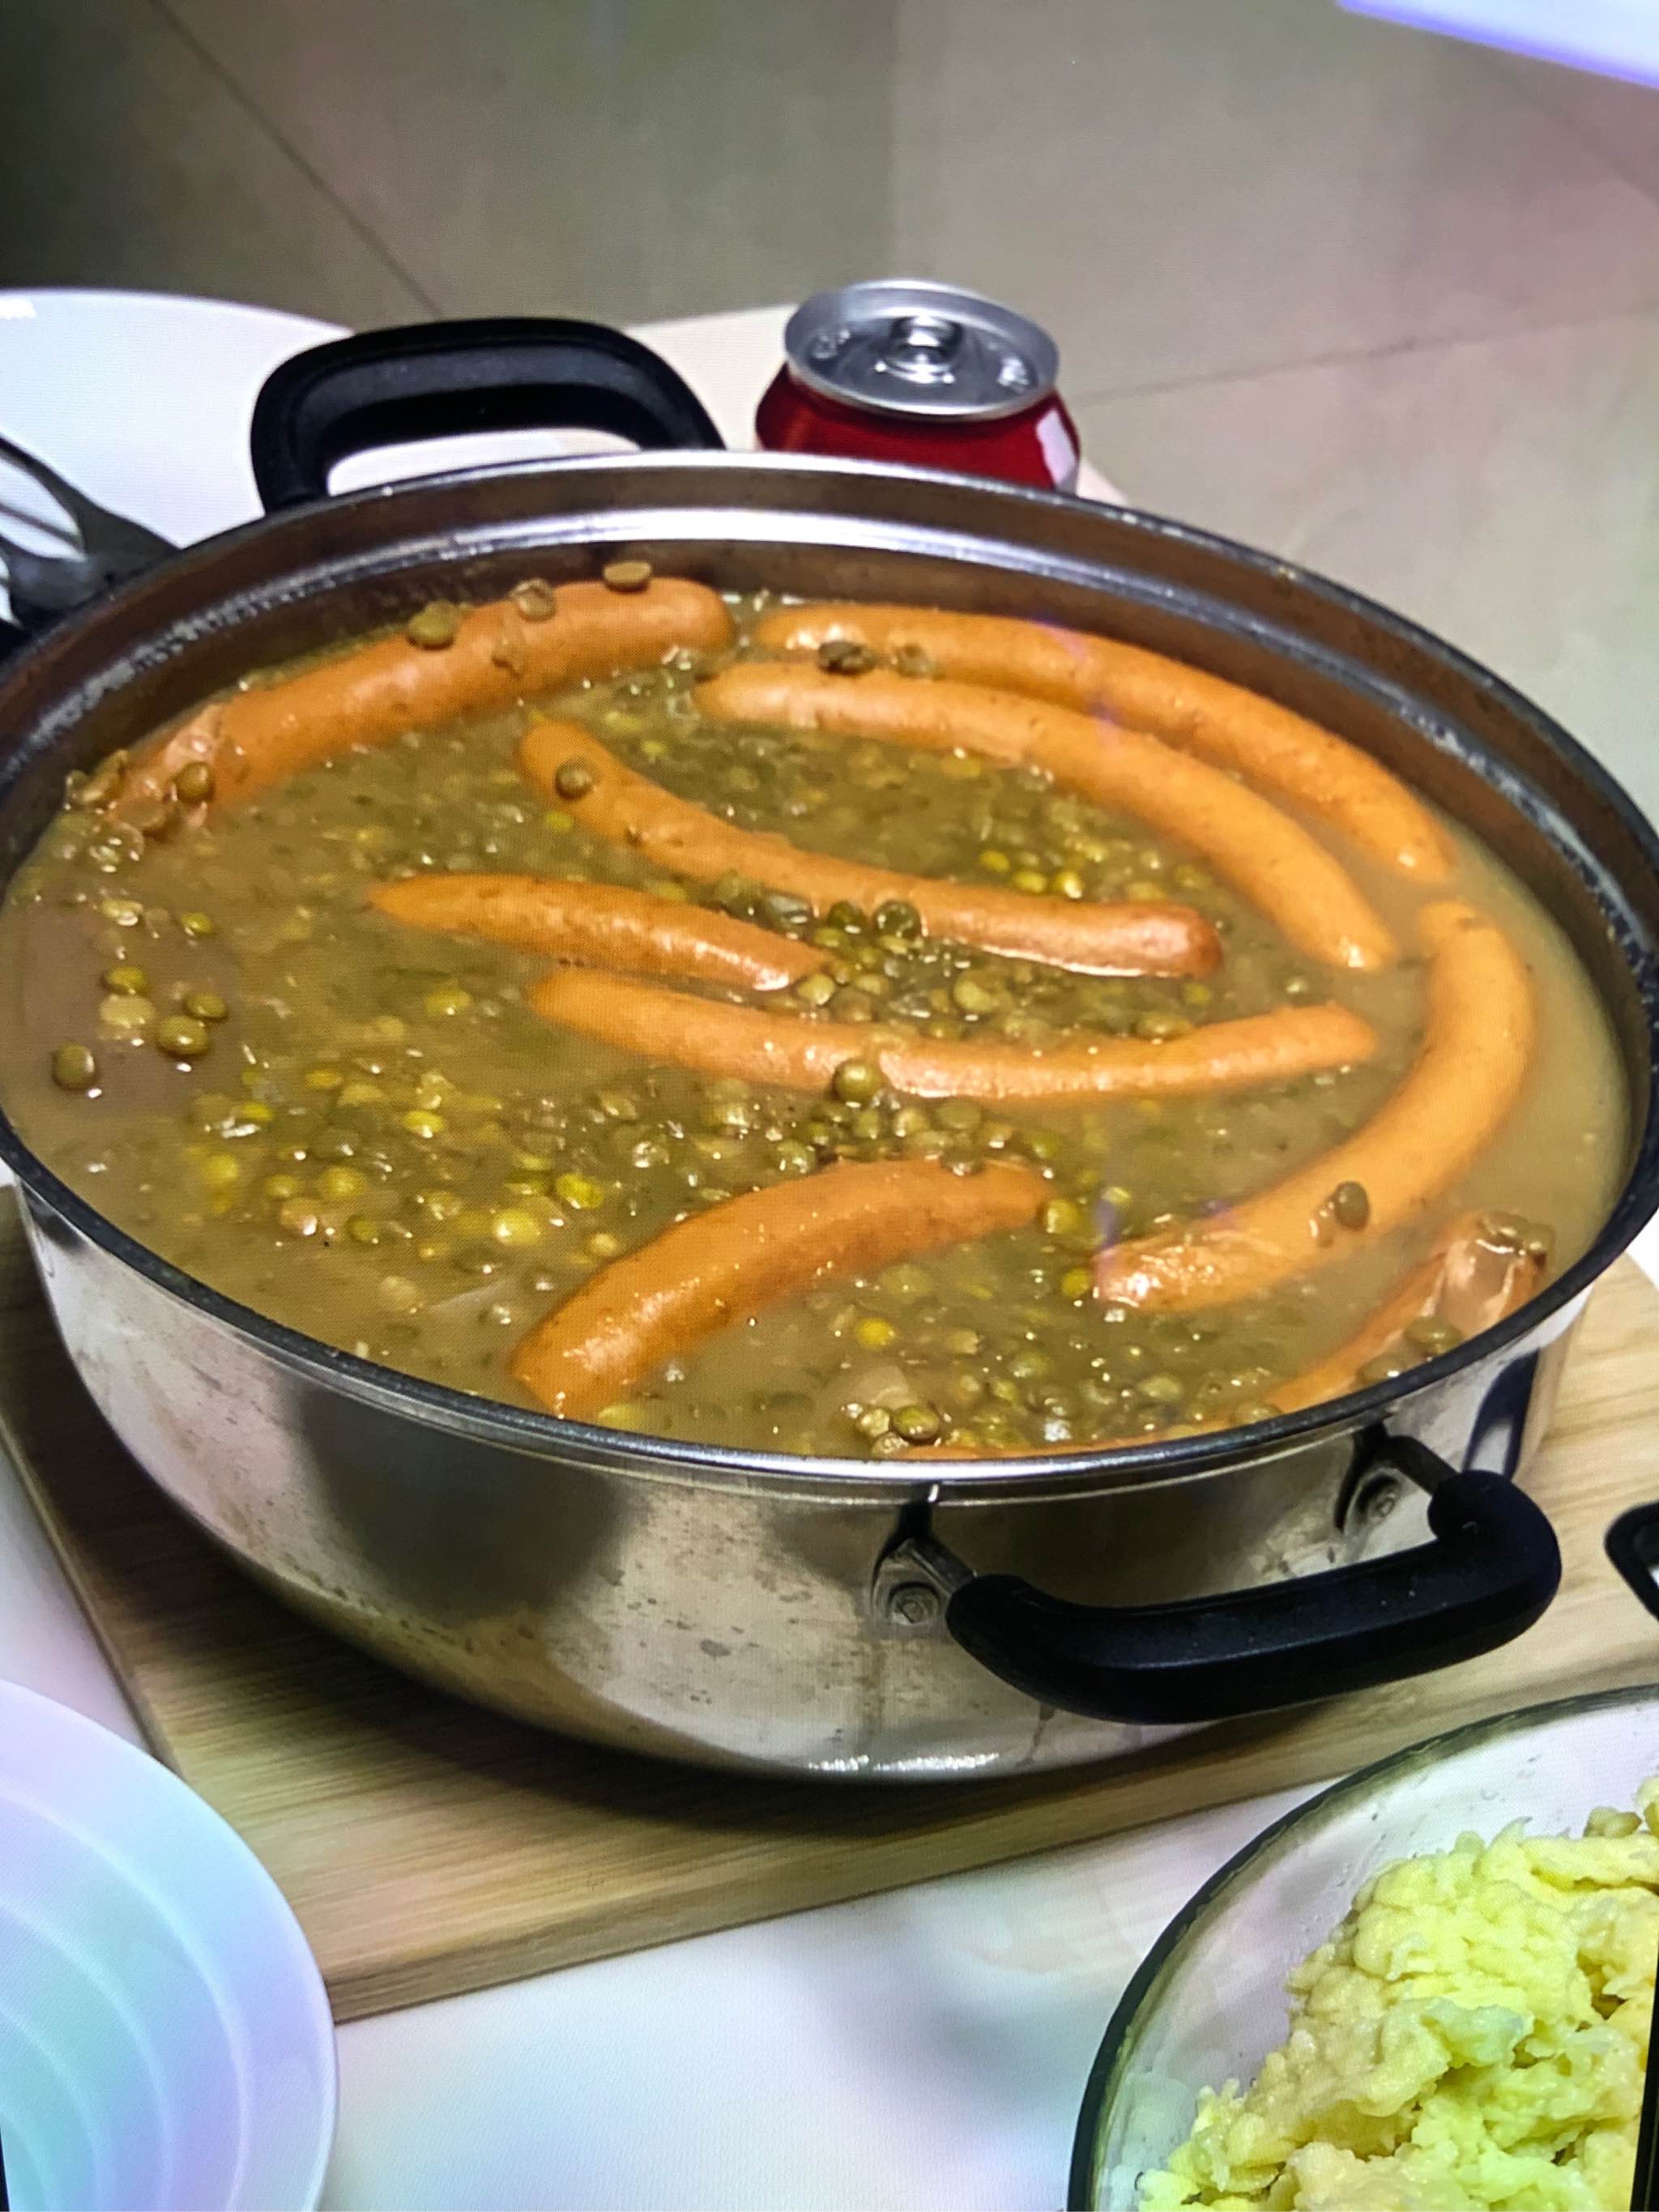 意得绿扁豆1kg 土耳其原装进口豆子 马粟豆 ideal green lentils